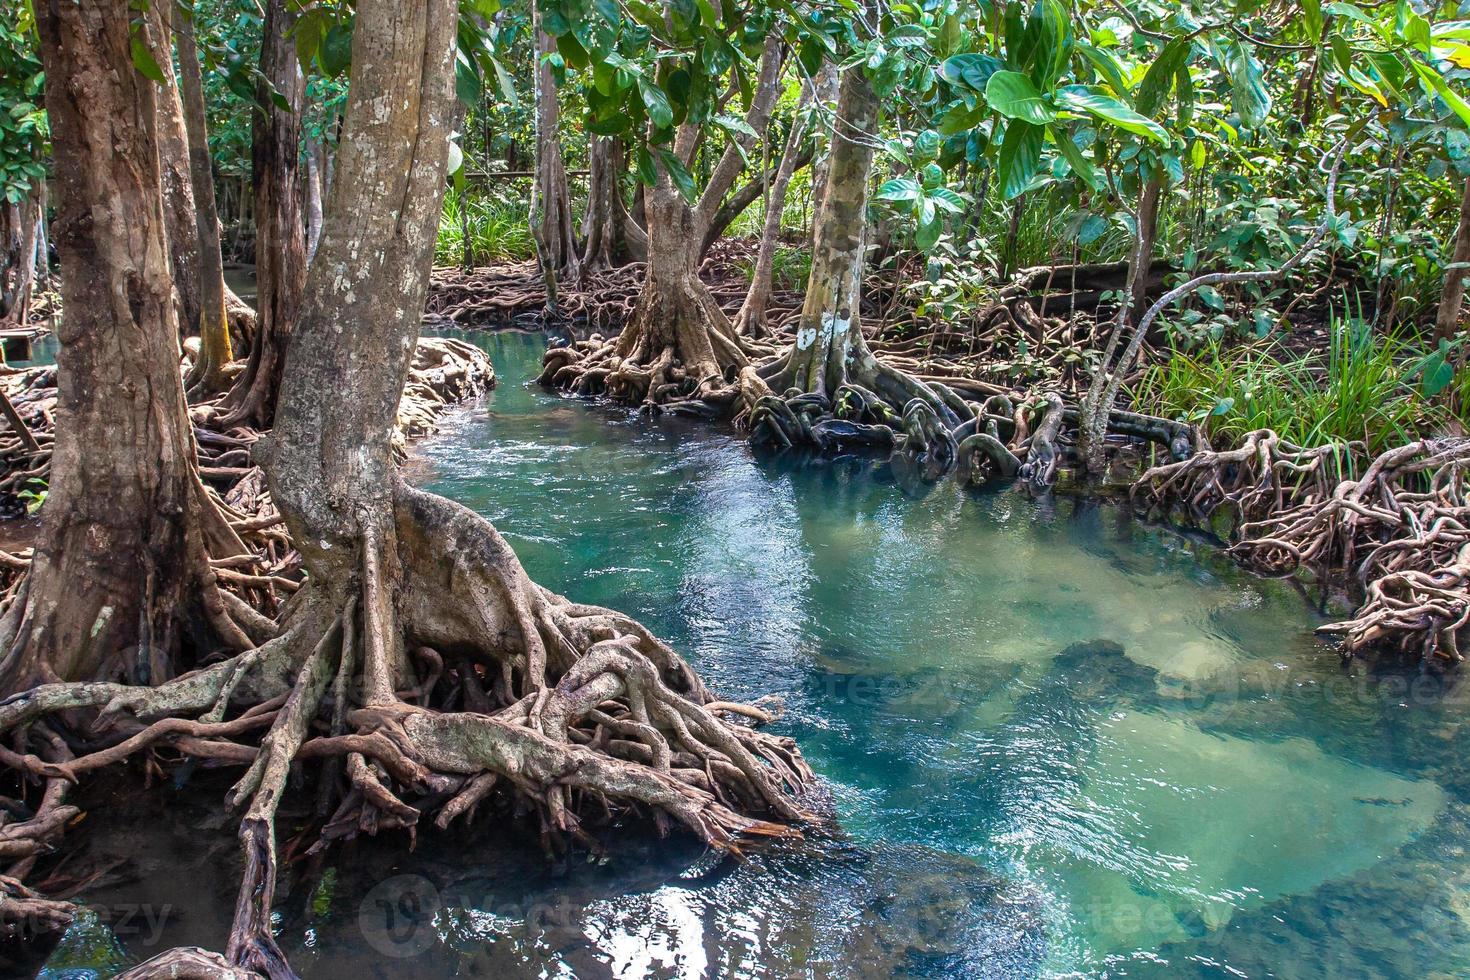 uma pequeno rio fluxos através uma mangue floresta com Grosso árvores com torcido raízes. a água é verde e claro. por aí a ásia selva. foto